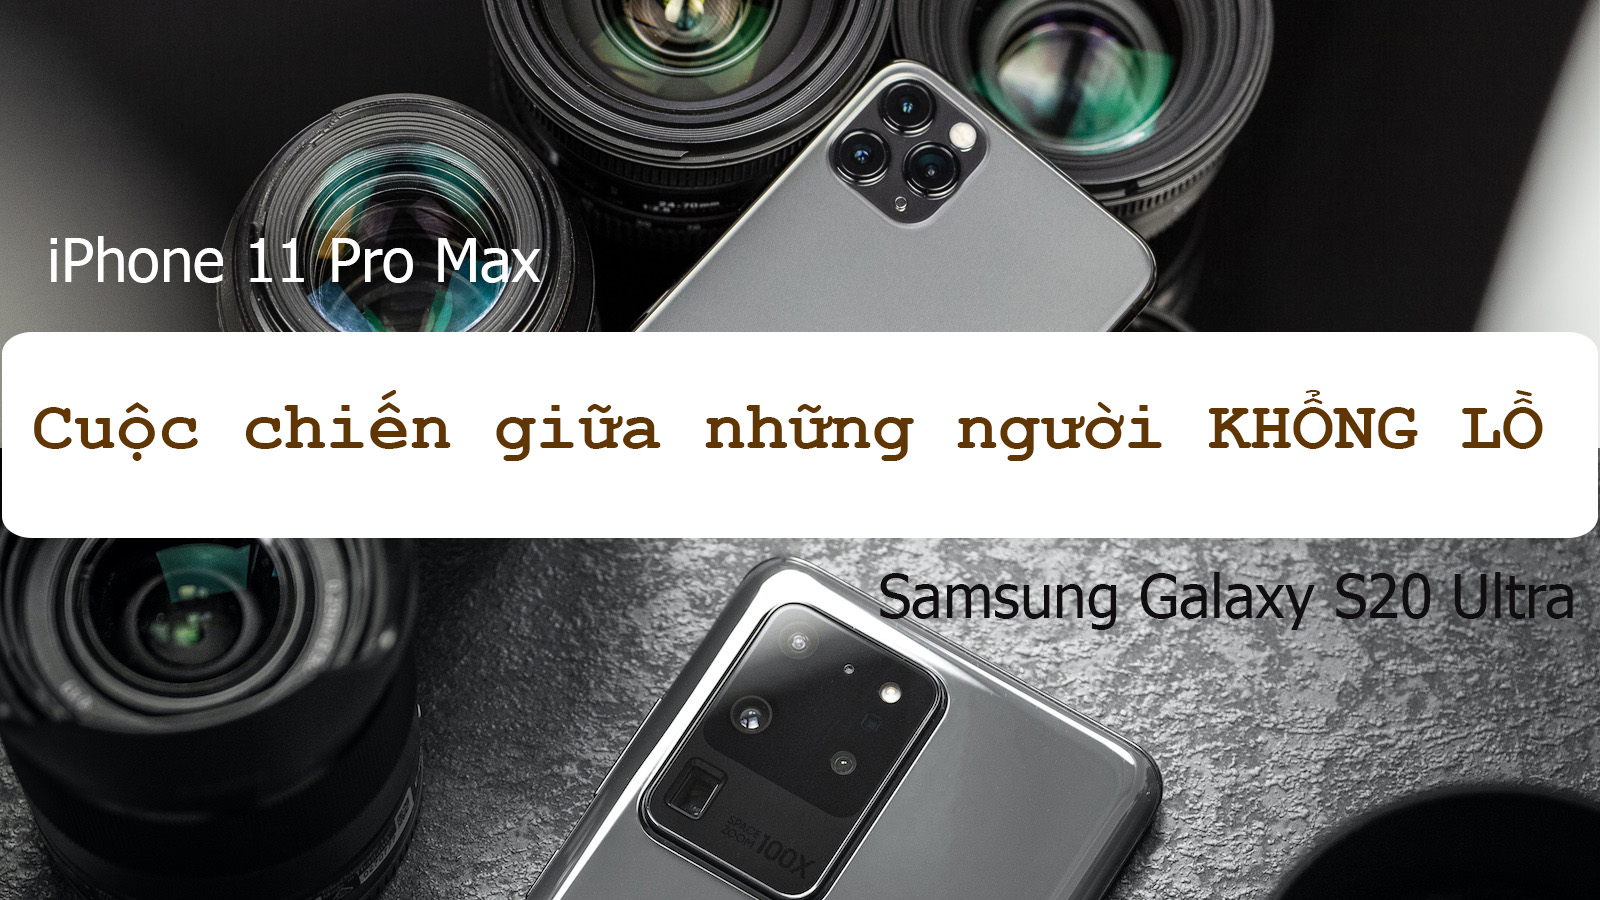 Samsung Galaxy S20 Ultra đối đầu iPhone 11 Pro Max: &#34;Long tranh hổ đấu&#34; - 1